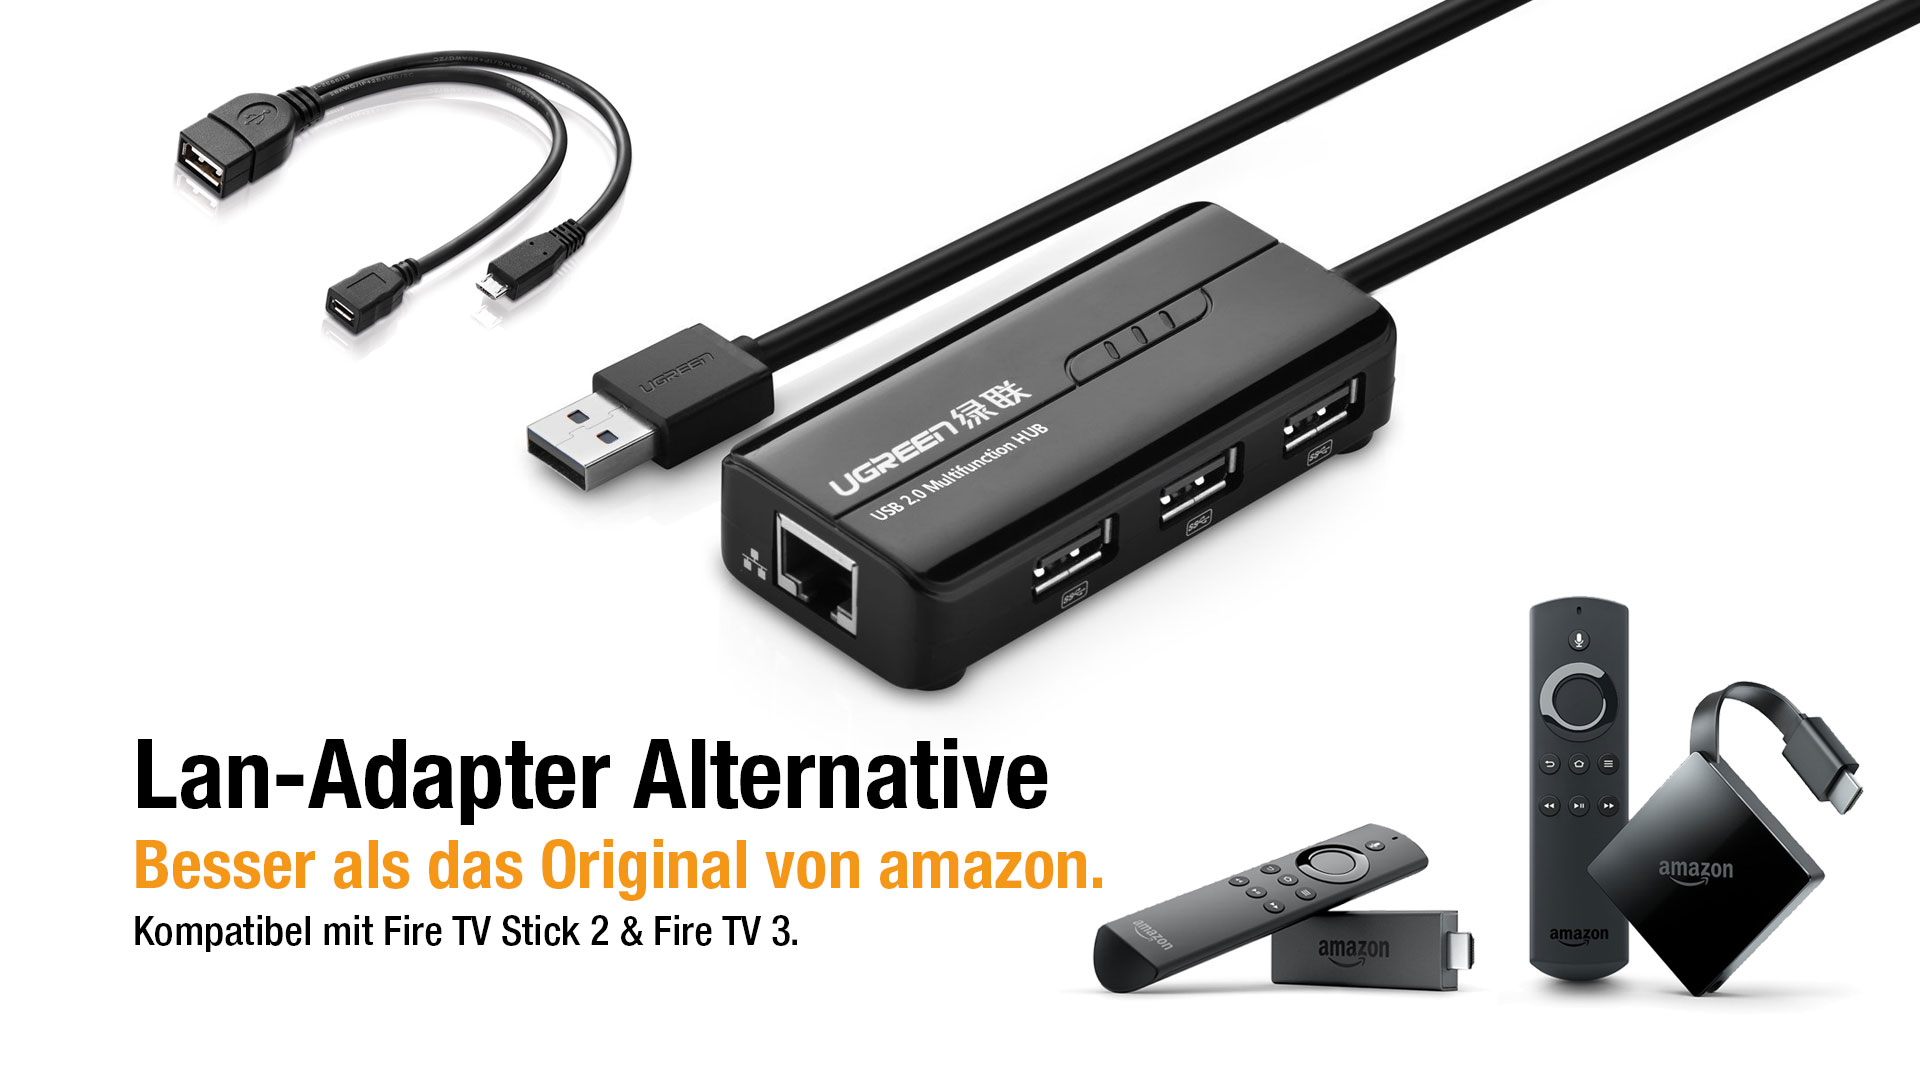 Fire TV 3 & Stick 2: OTG Kabel, USB & LAN-Adapter gleichzeitig nutzen